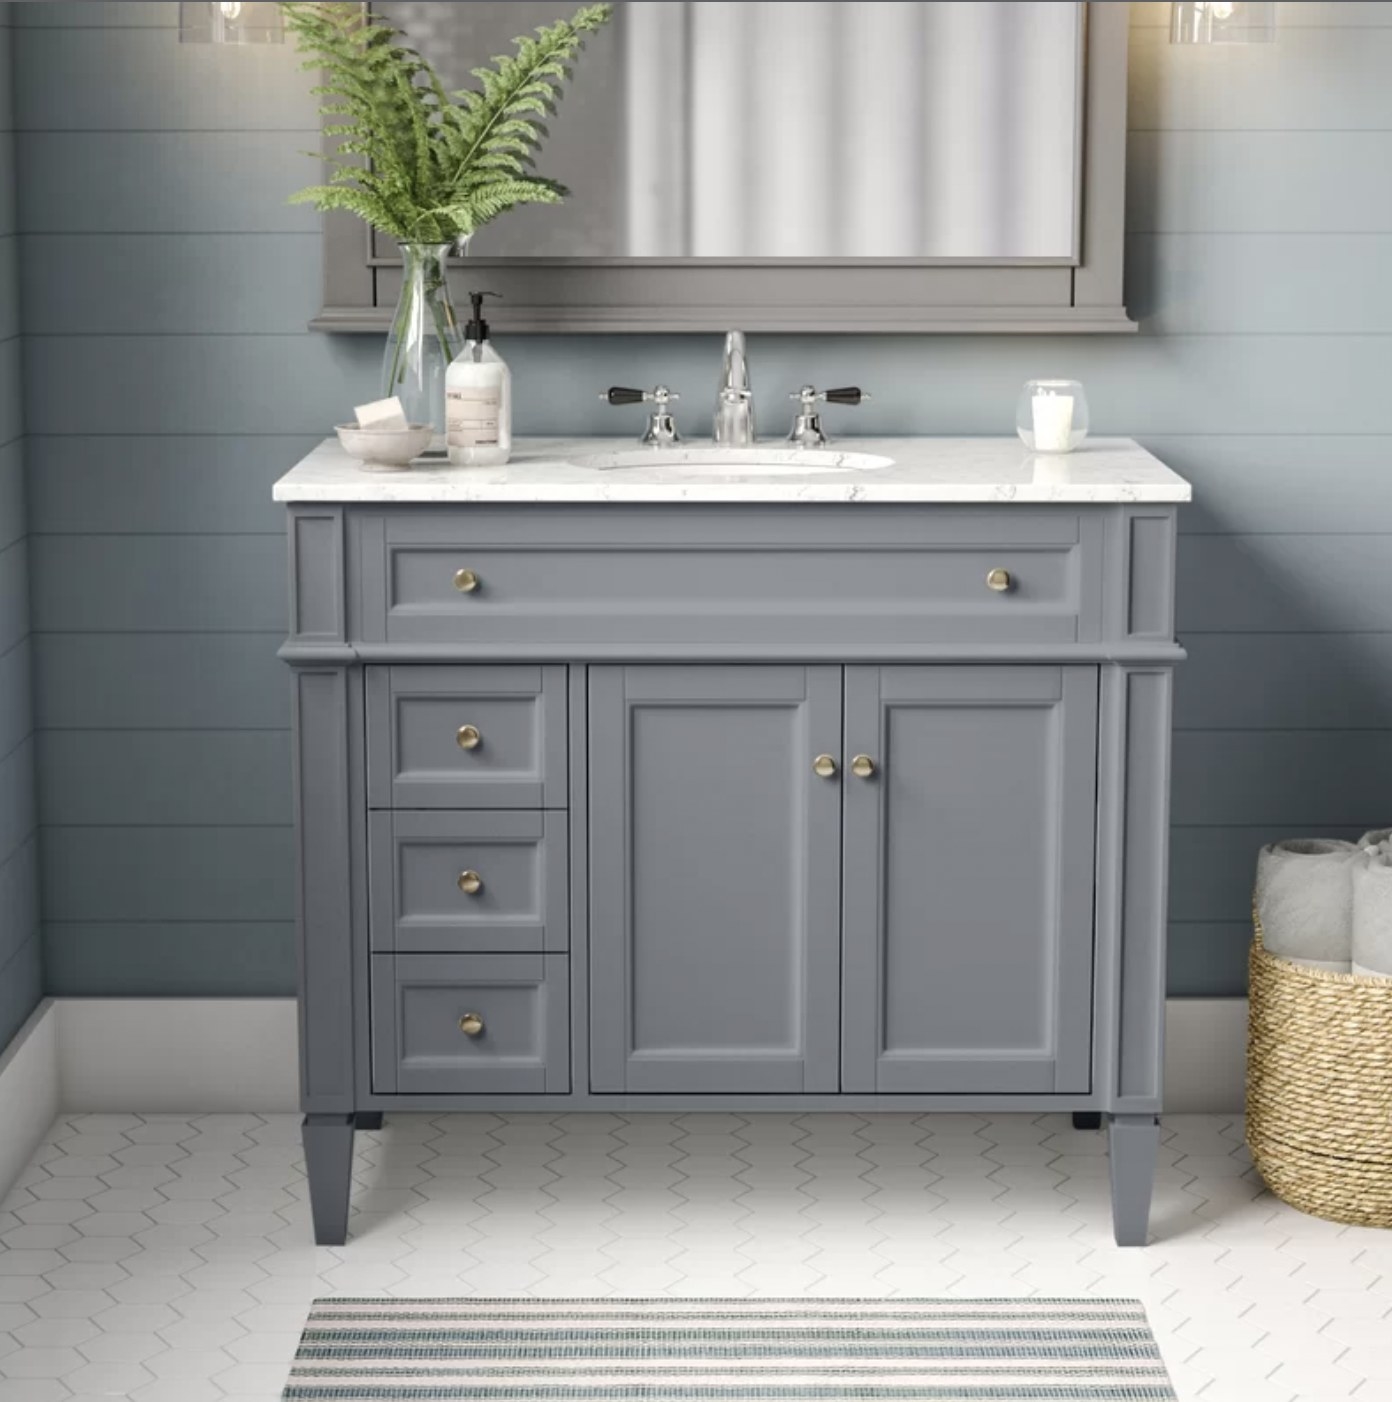 The grey vanity in bathroom